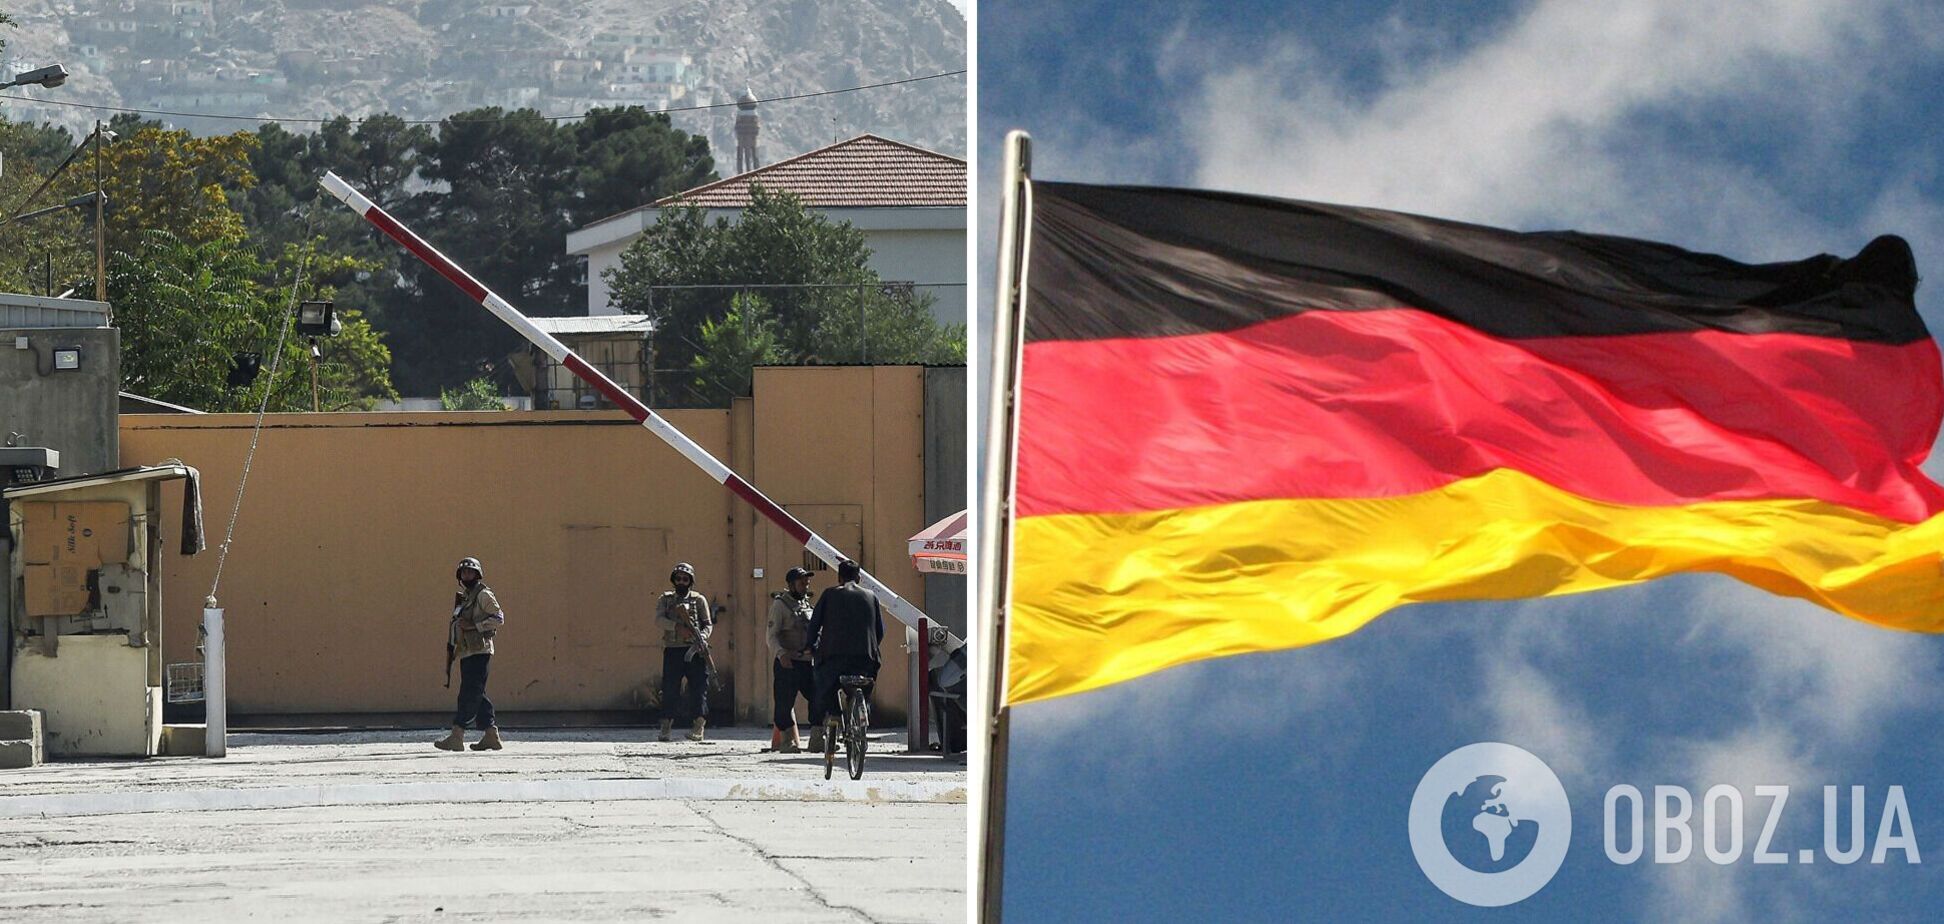 Германия решила вернуть посла в Афганистан, чтобы наладить контакт с талибами – СМИ